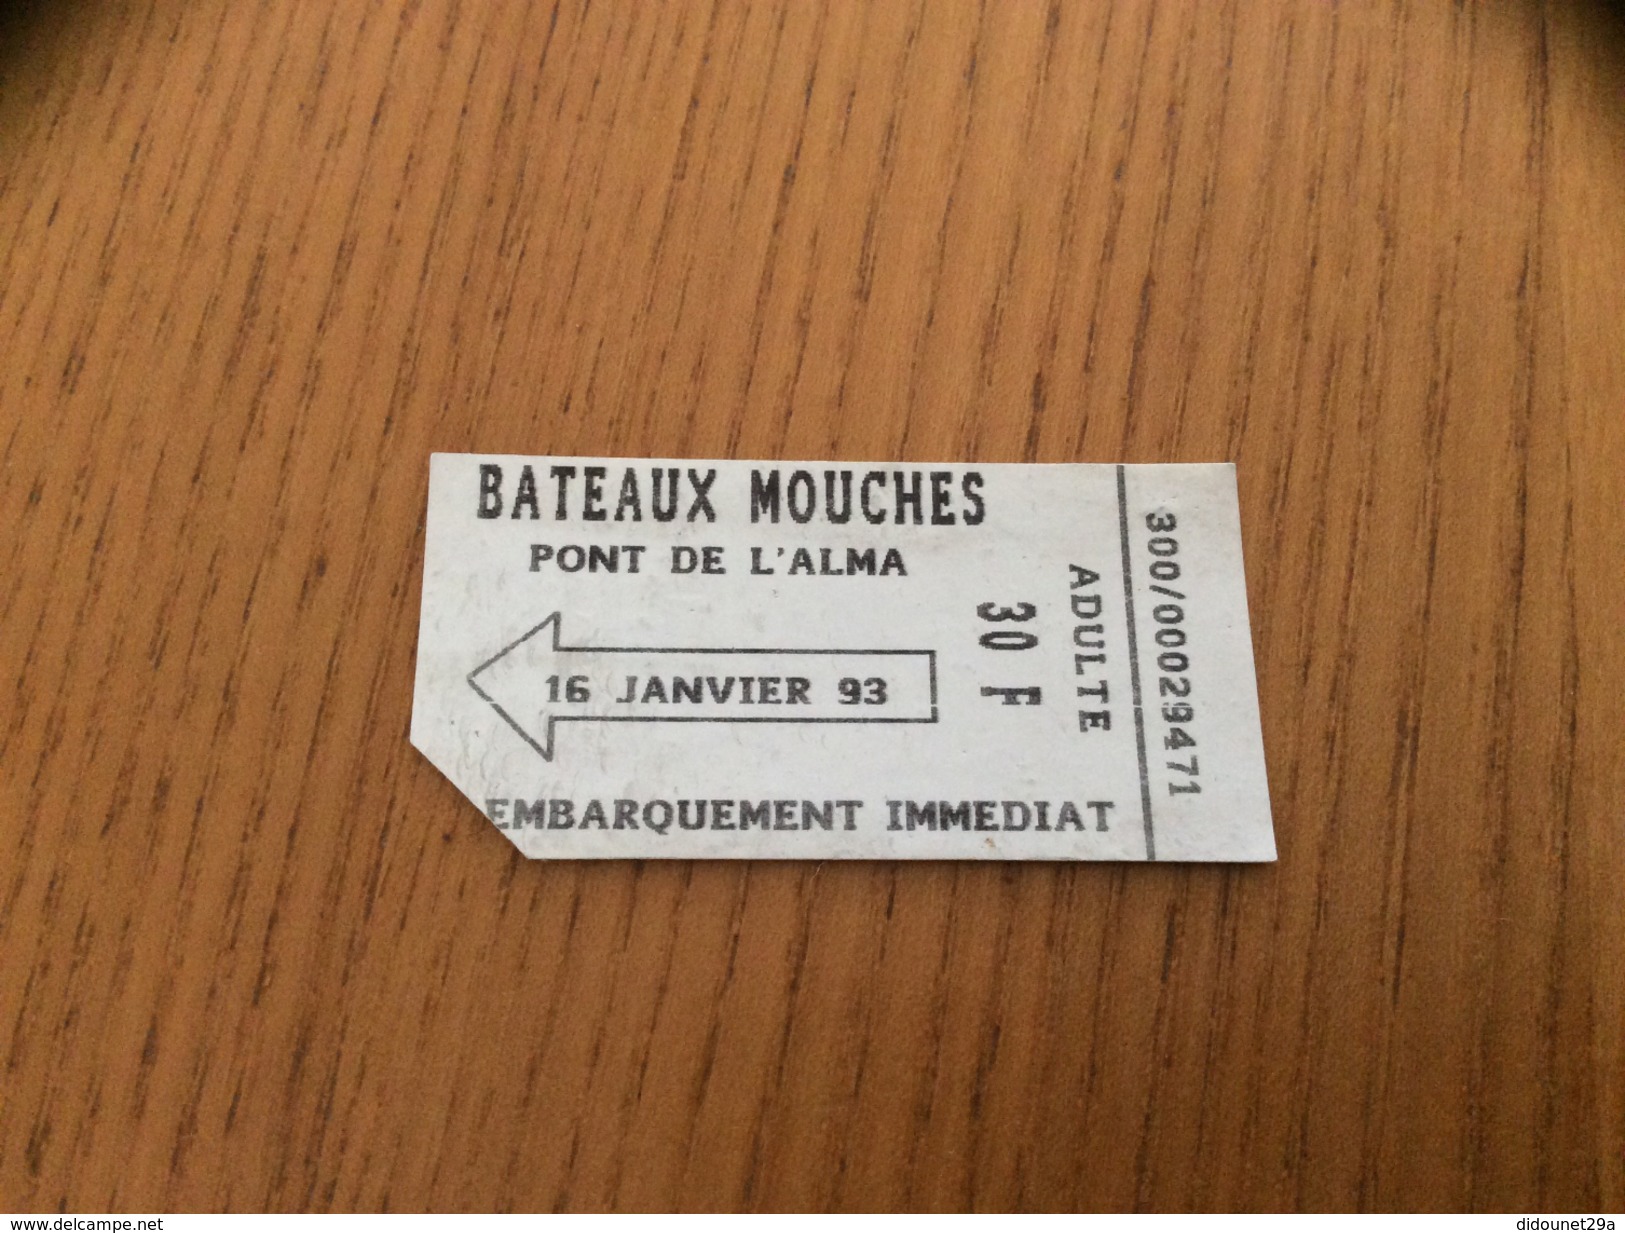 Ticket De Transport "BATEAUX MOUCHES - PONT DE L'ALMA" (Paris 75) 1993 Type 1 - Europe